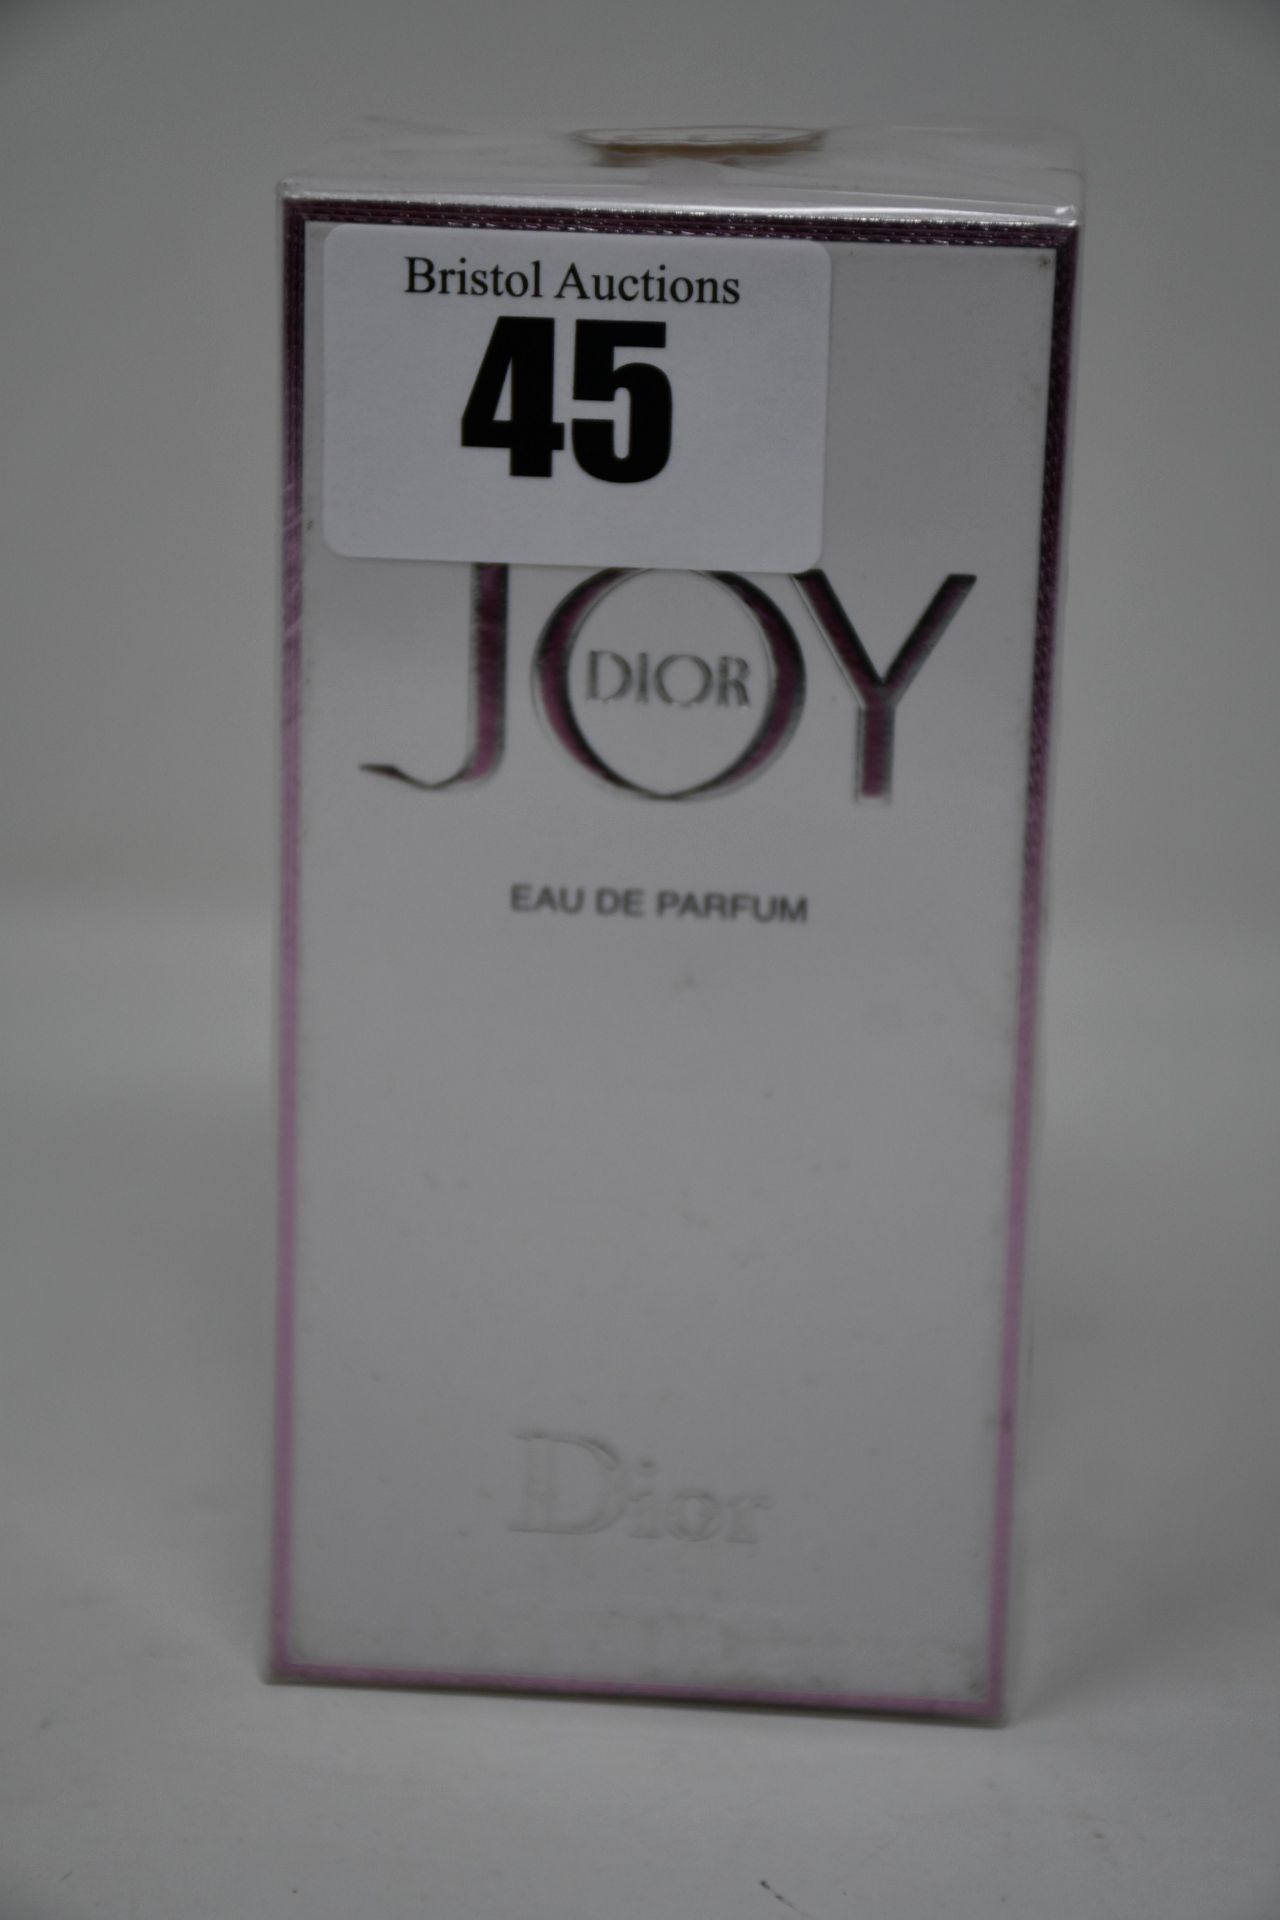 Two Dior Joy eau de parfum (50ml).